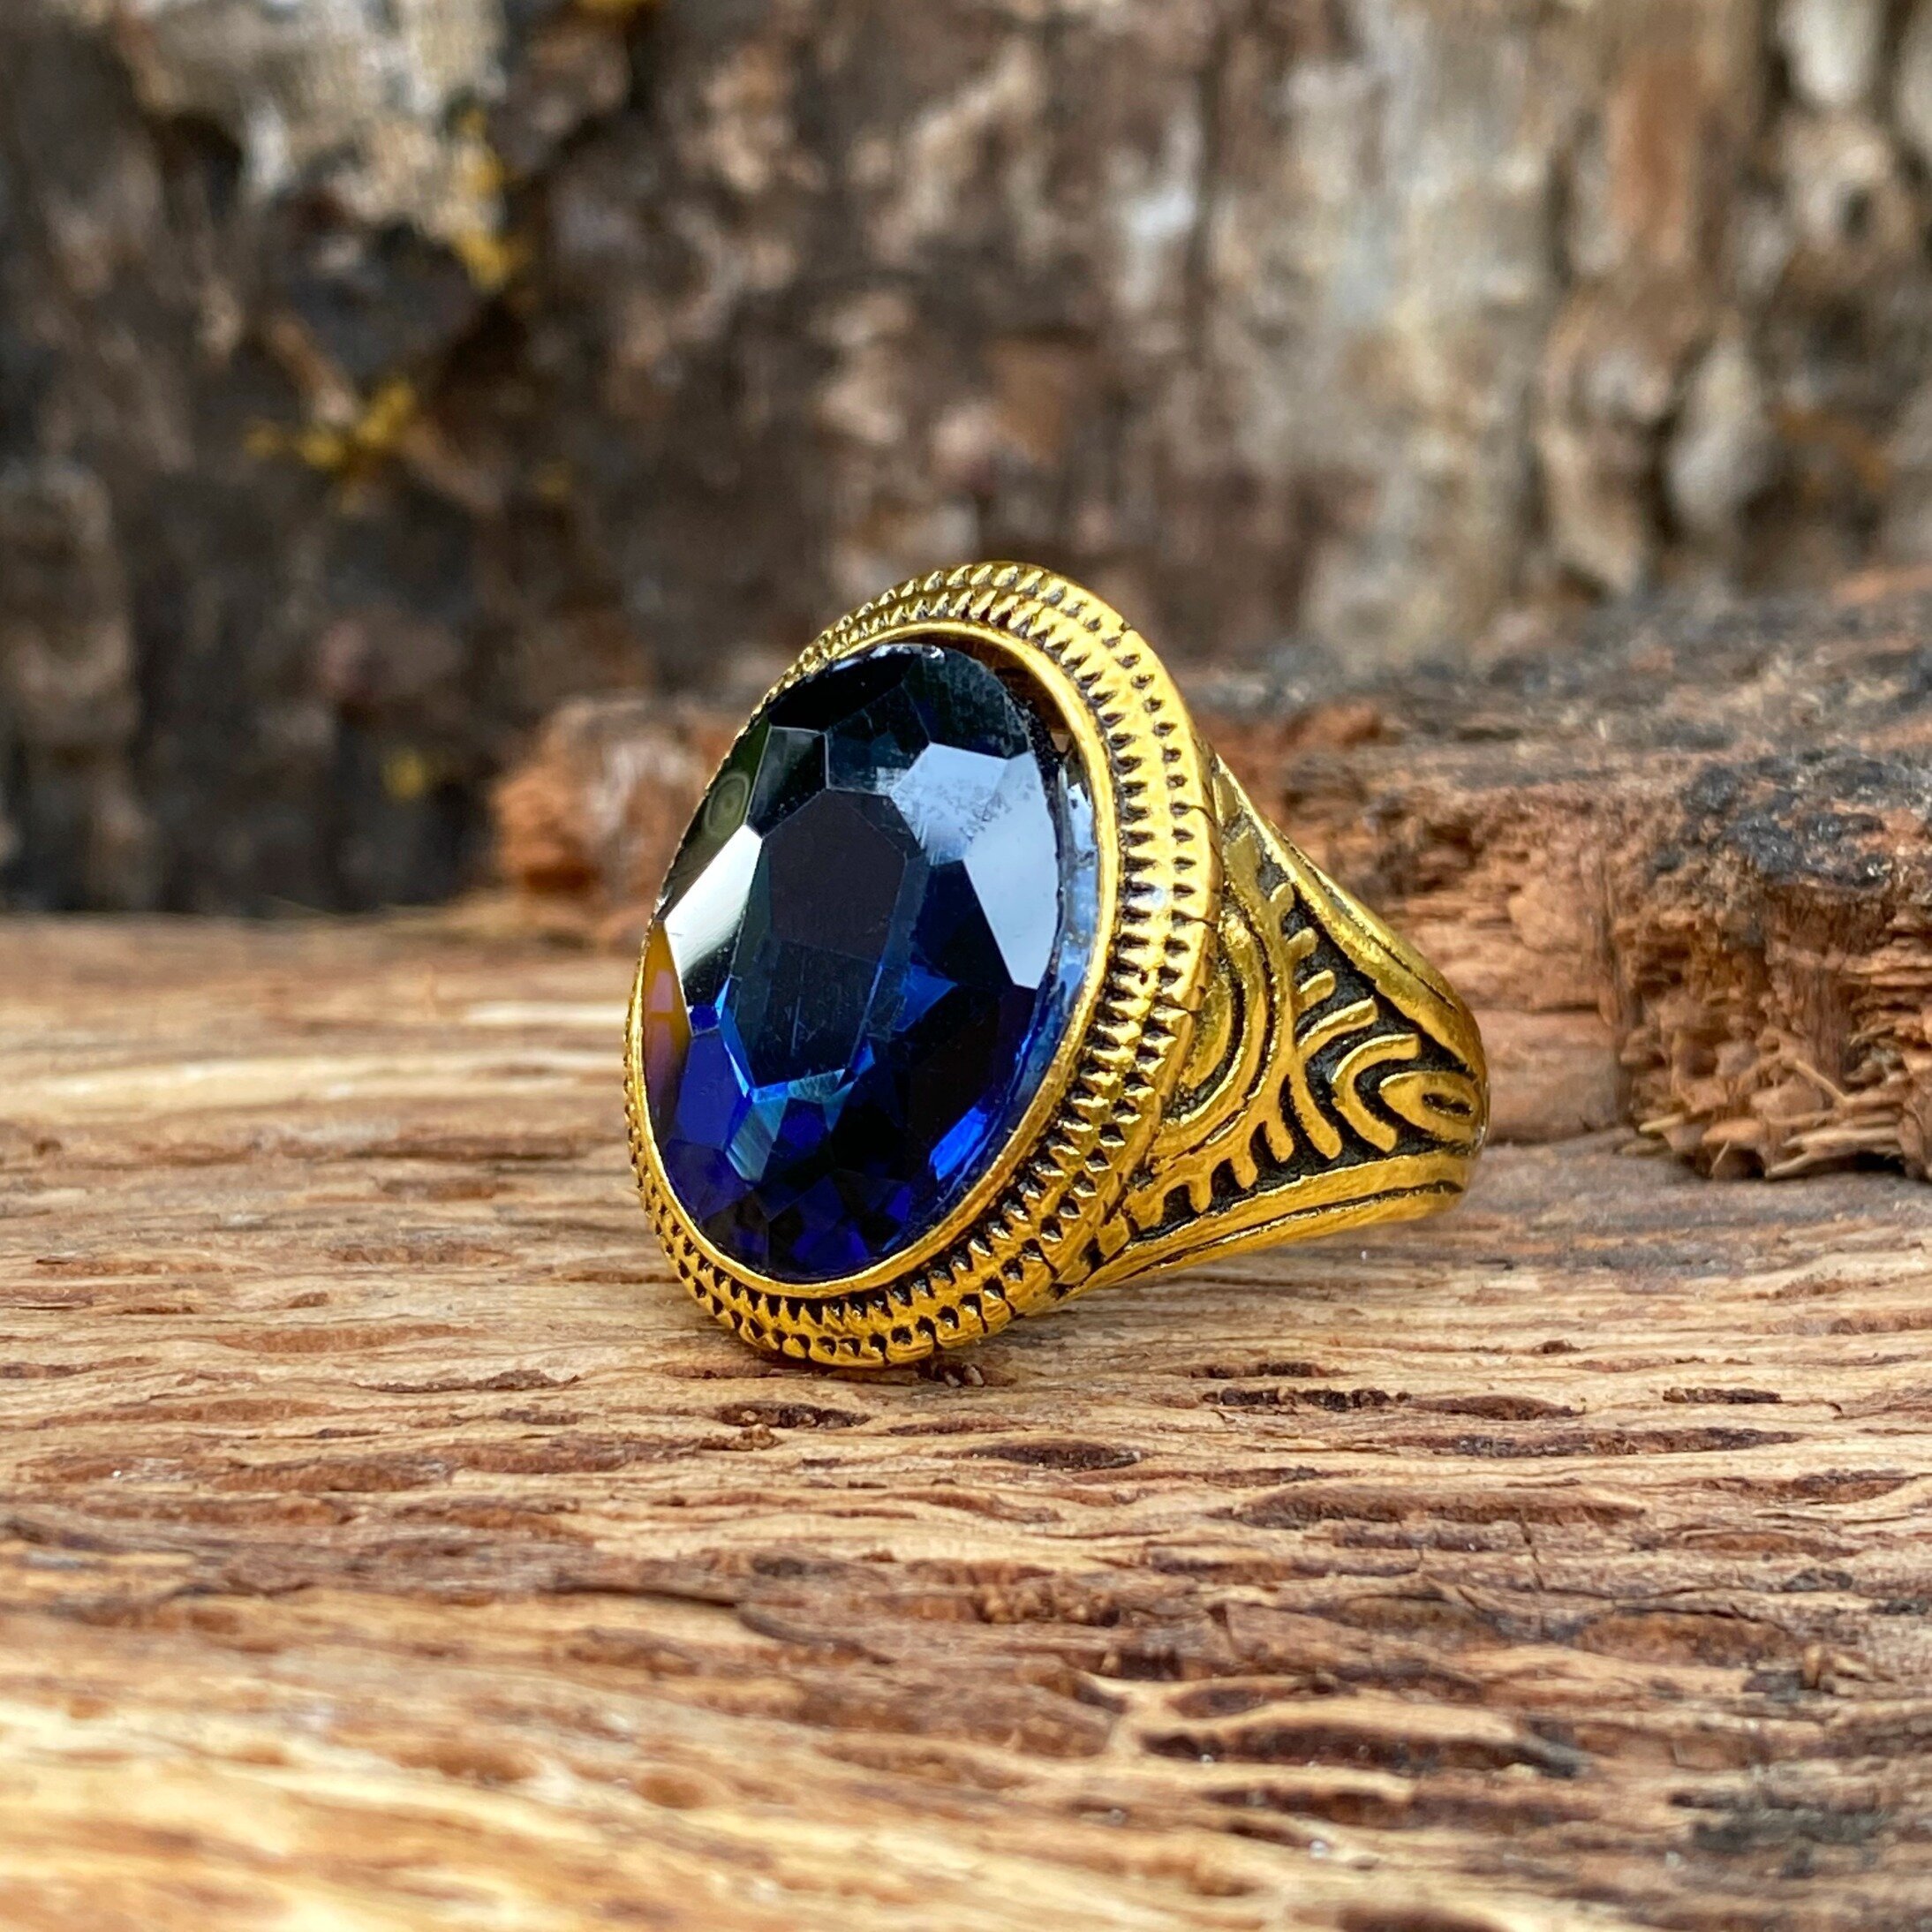 Garnet Crystal Rhinestone Ring Size 9.5 - Emperor